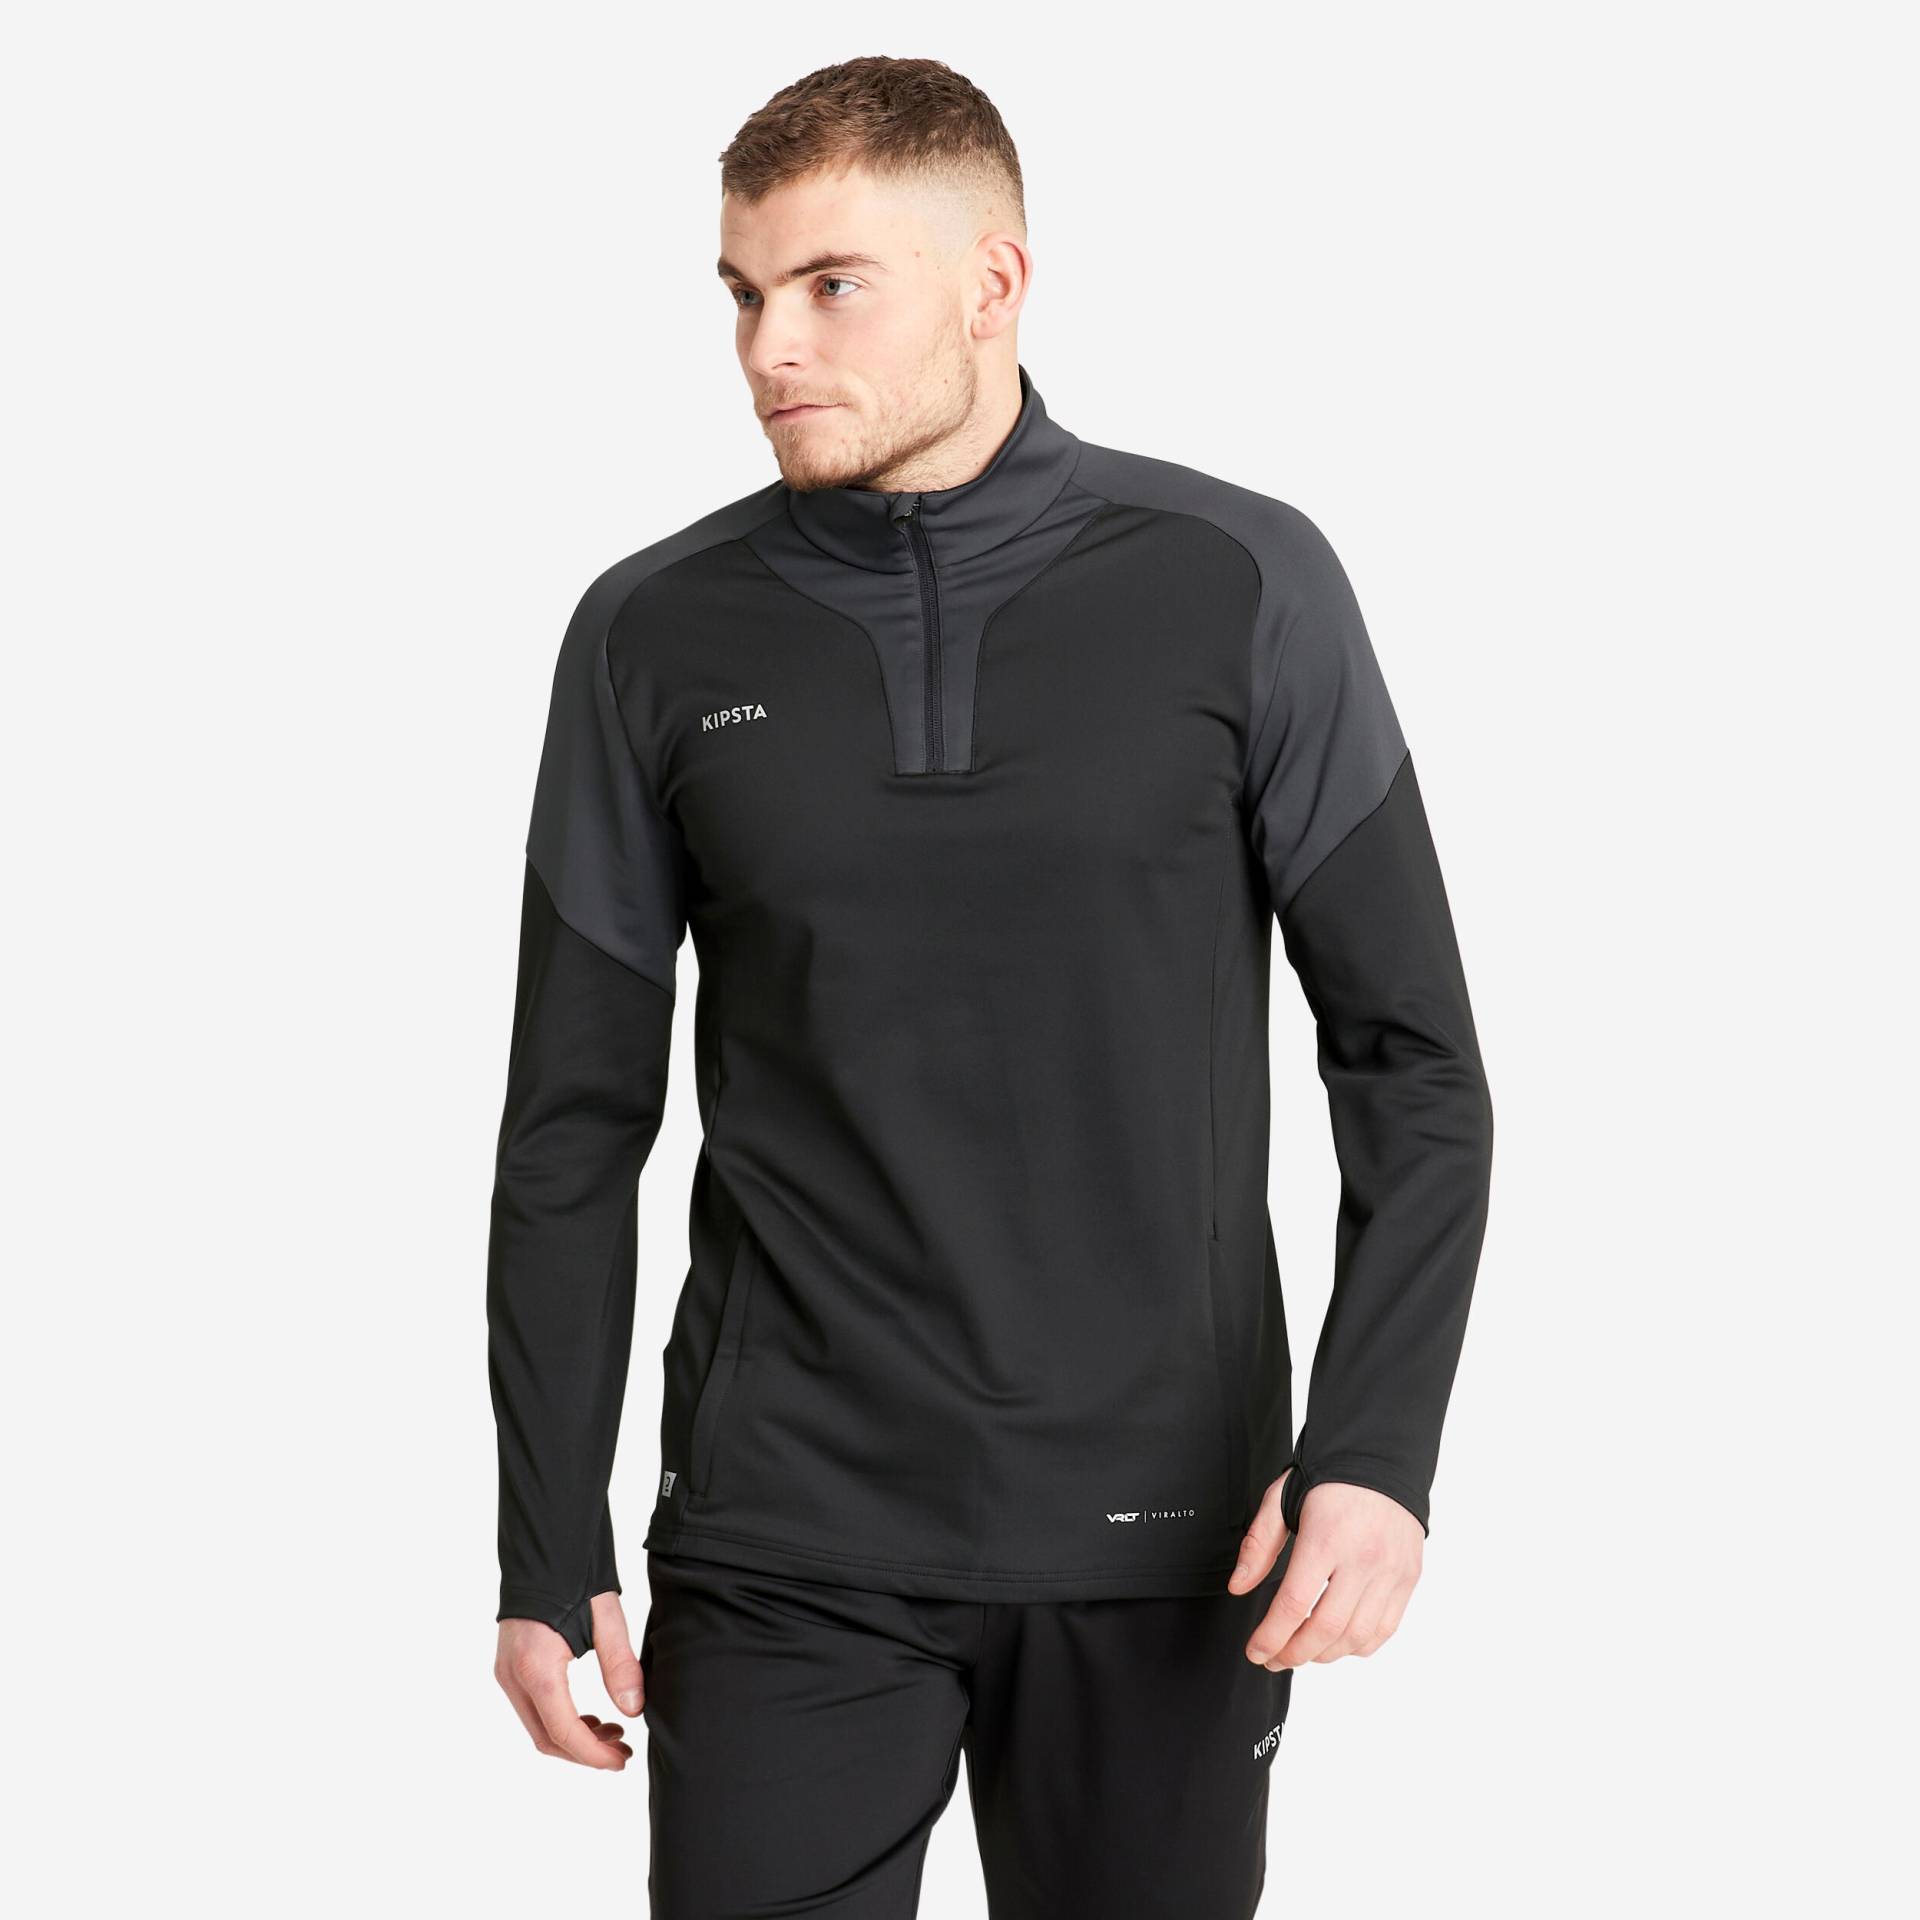 Damen/Herren Fussball Sweatshirt mit Reissverschluss - Viralto grau/schwarz von KIPSTA